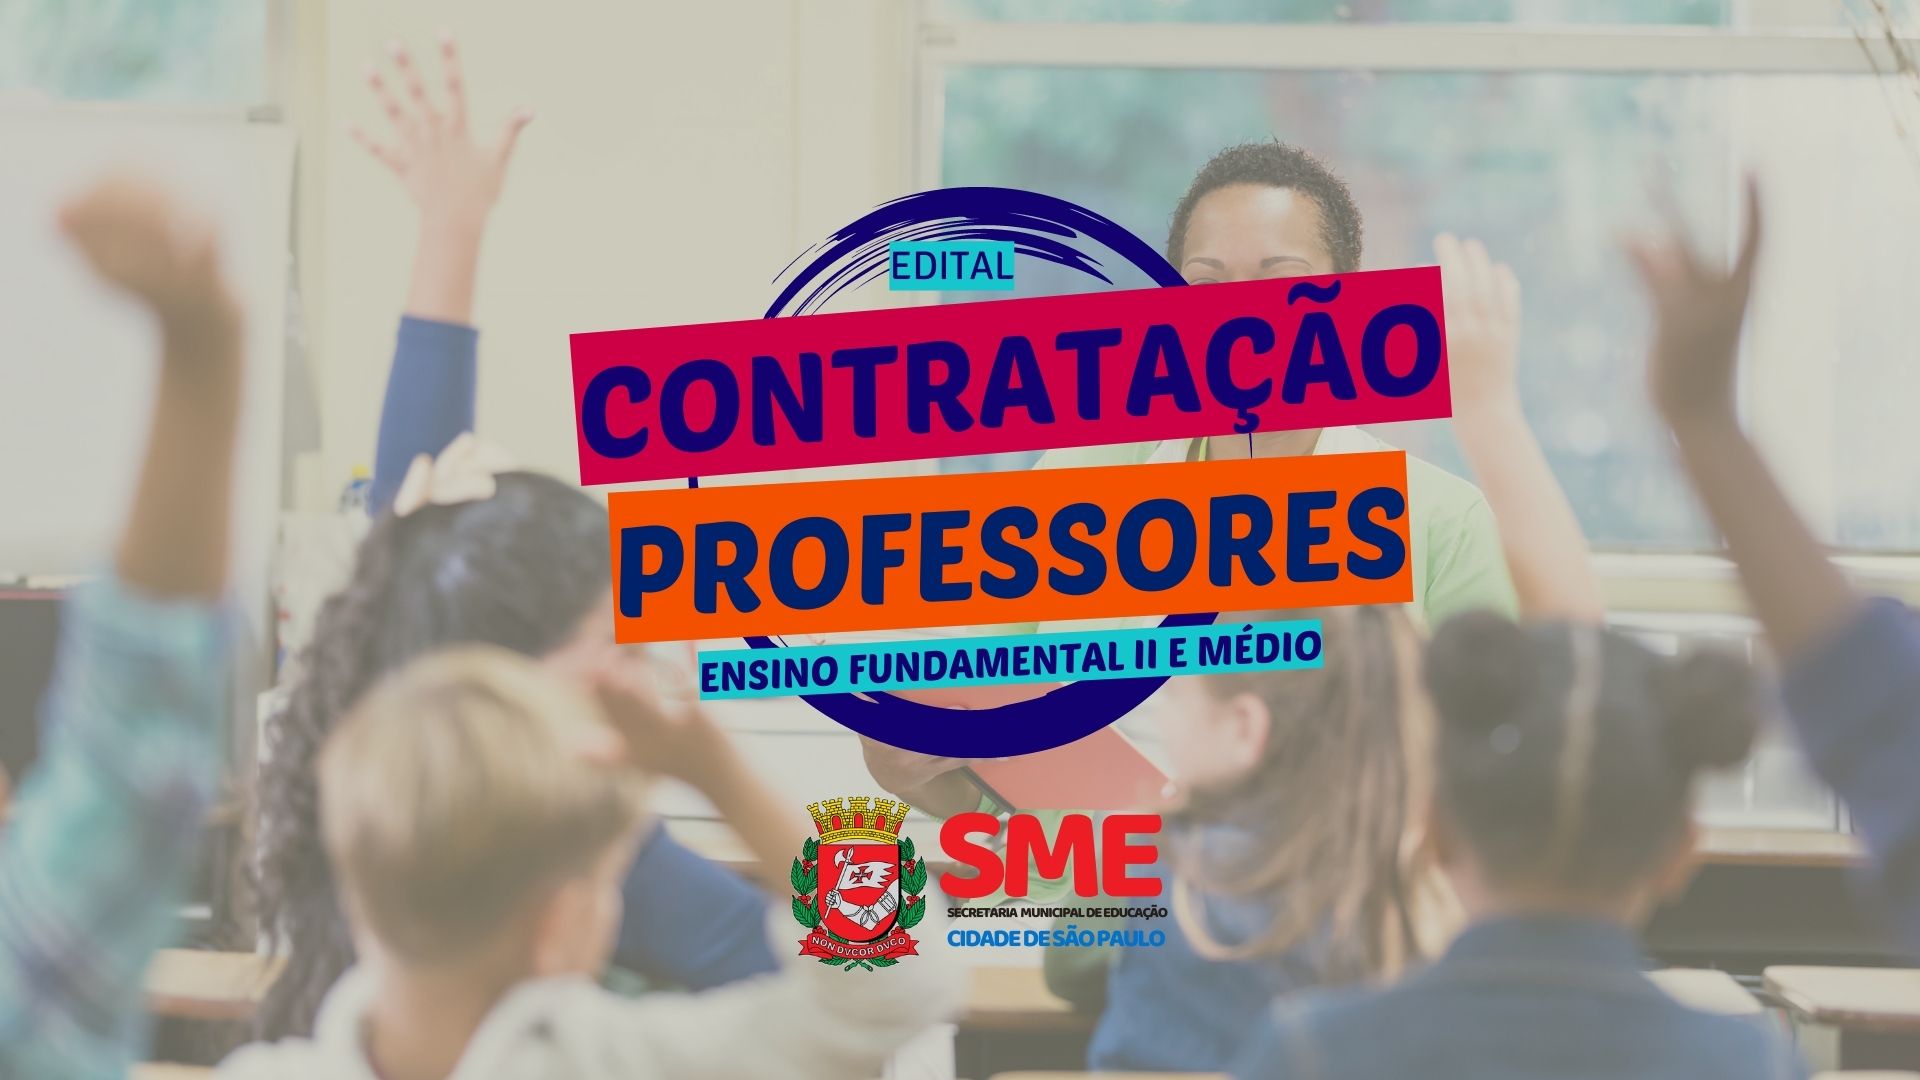 SME - SP ABRE inscrições para contratação de Professor de Educação